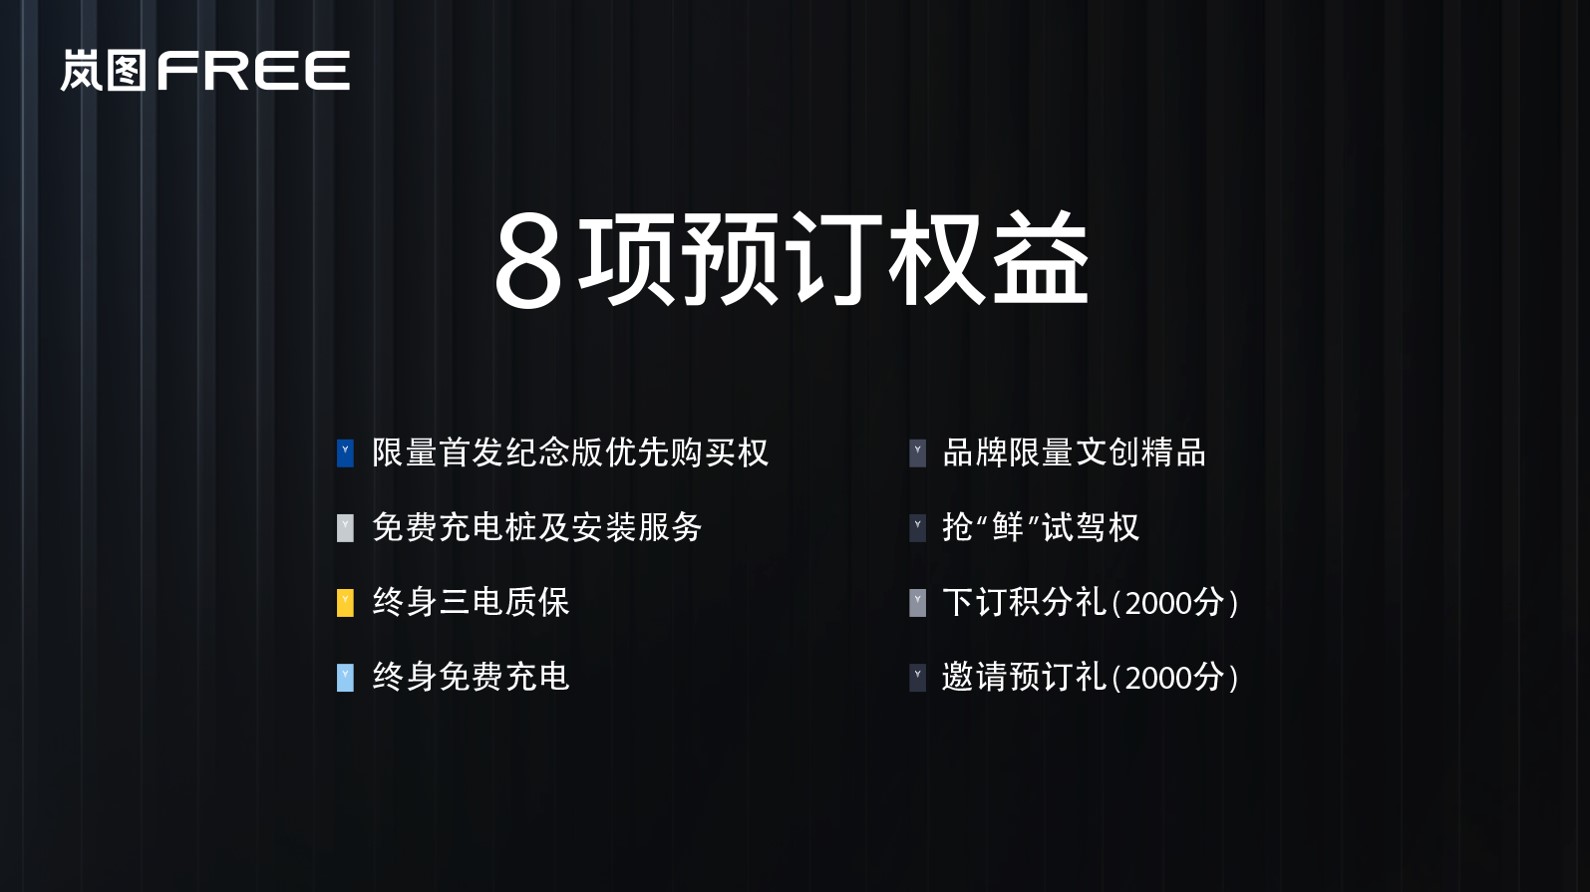 岚图FREE推出增程版及纯电版 预售31.36-33.36万元